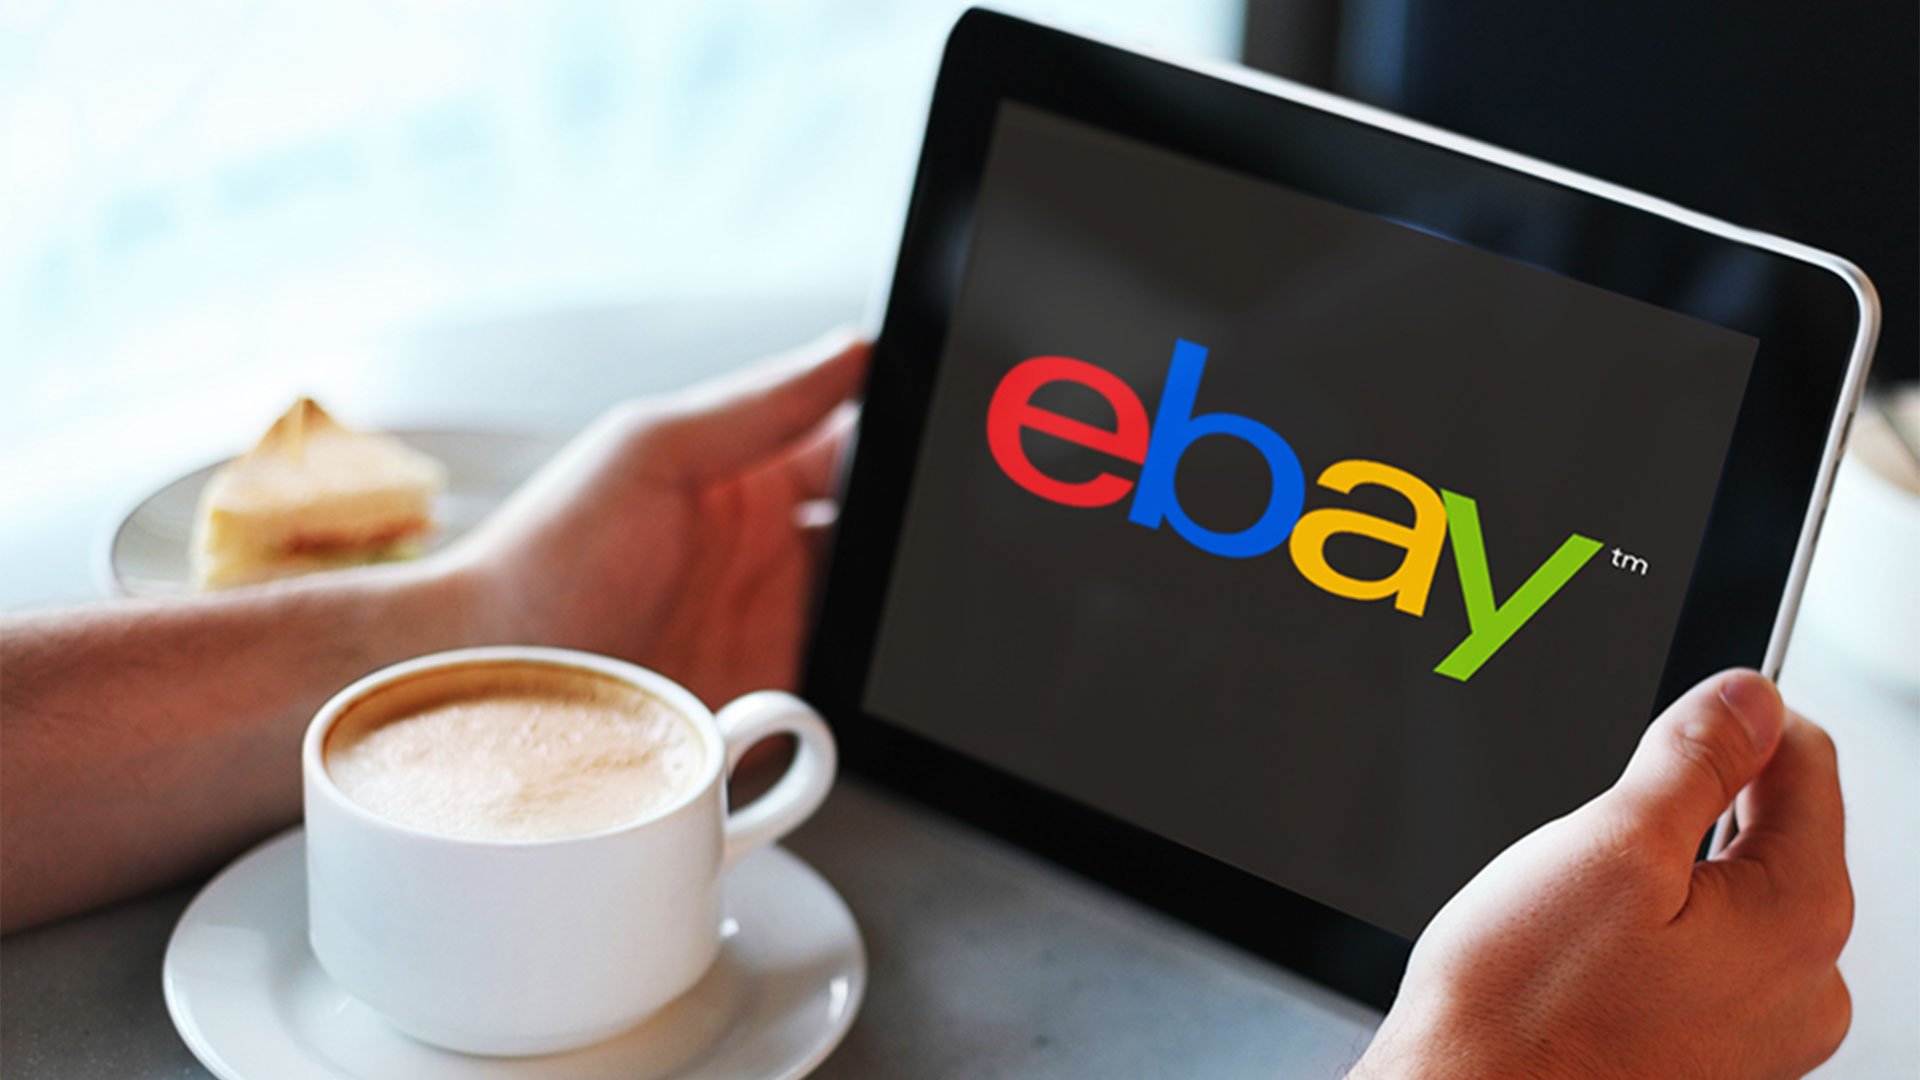 Kinh nghiệm mua hàng và cách bán hàng trên Ebay hiệu quả